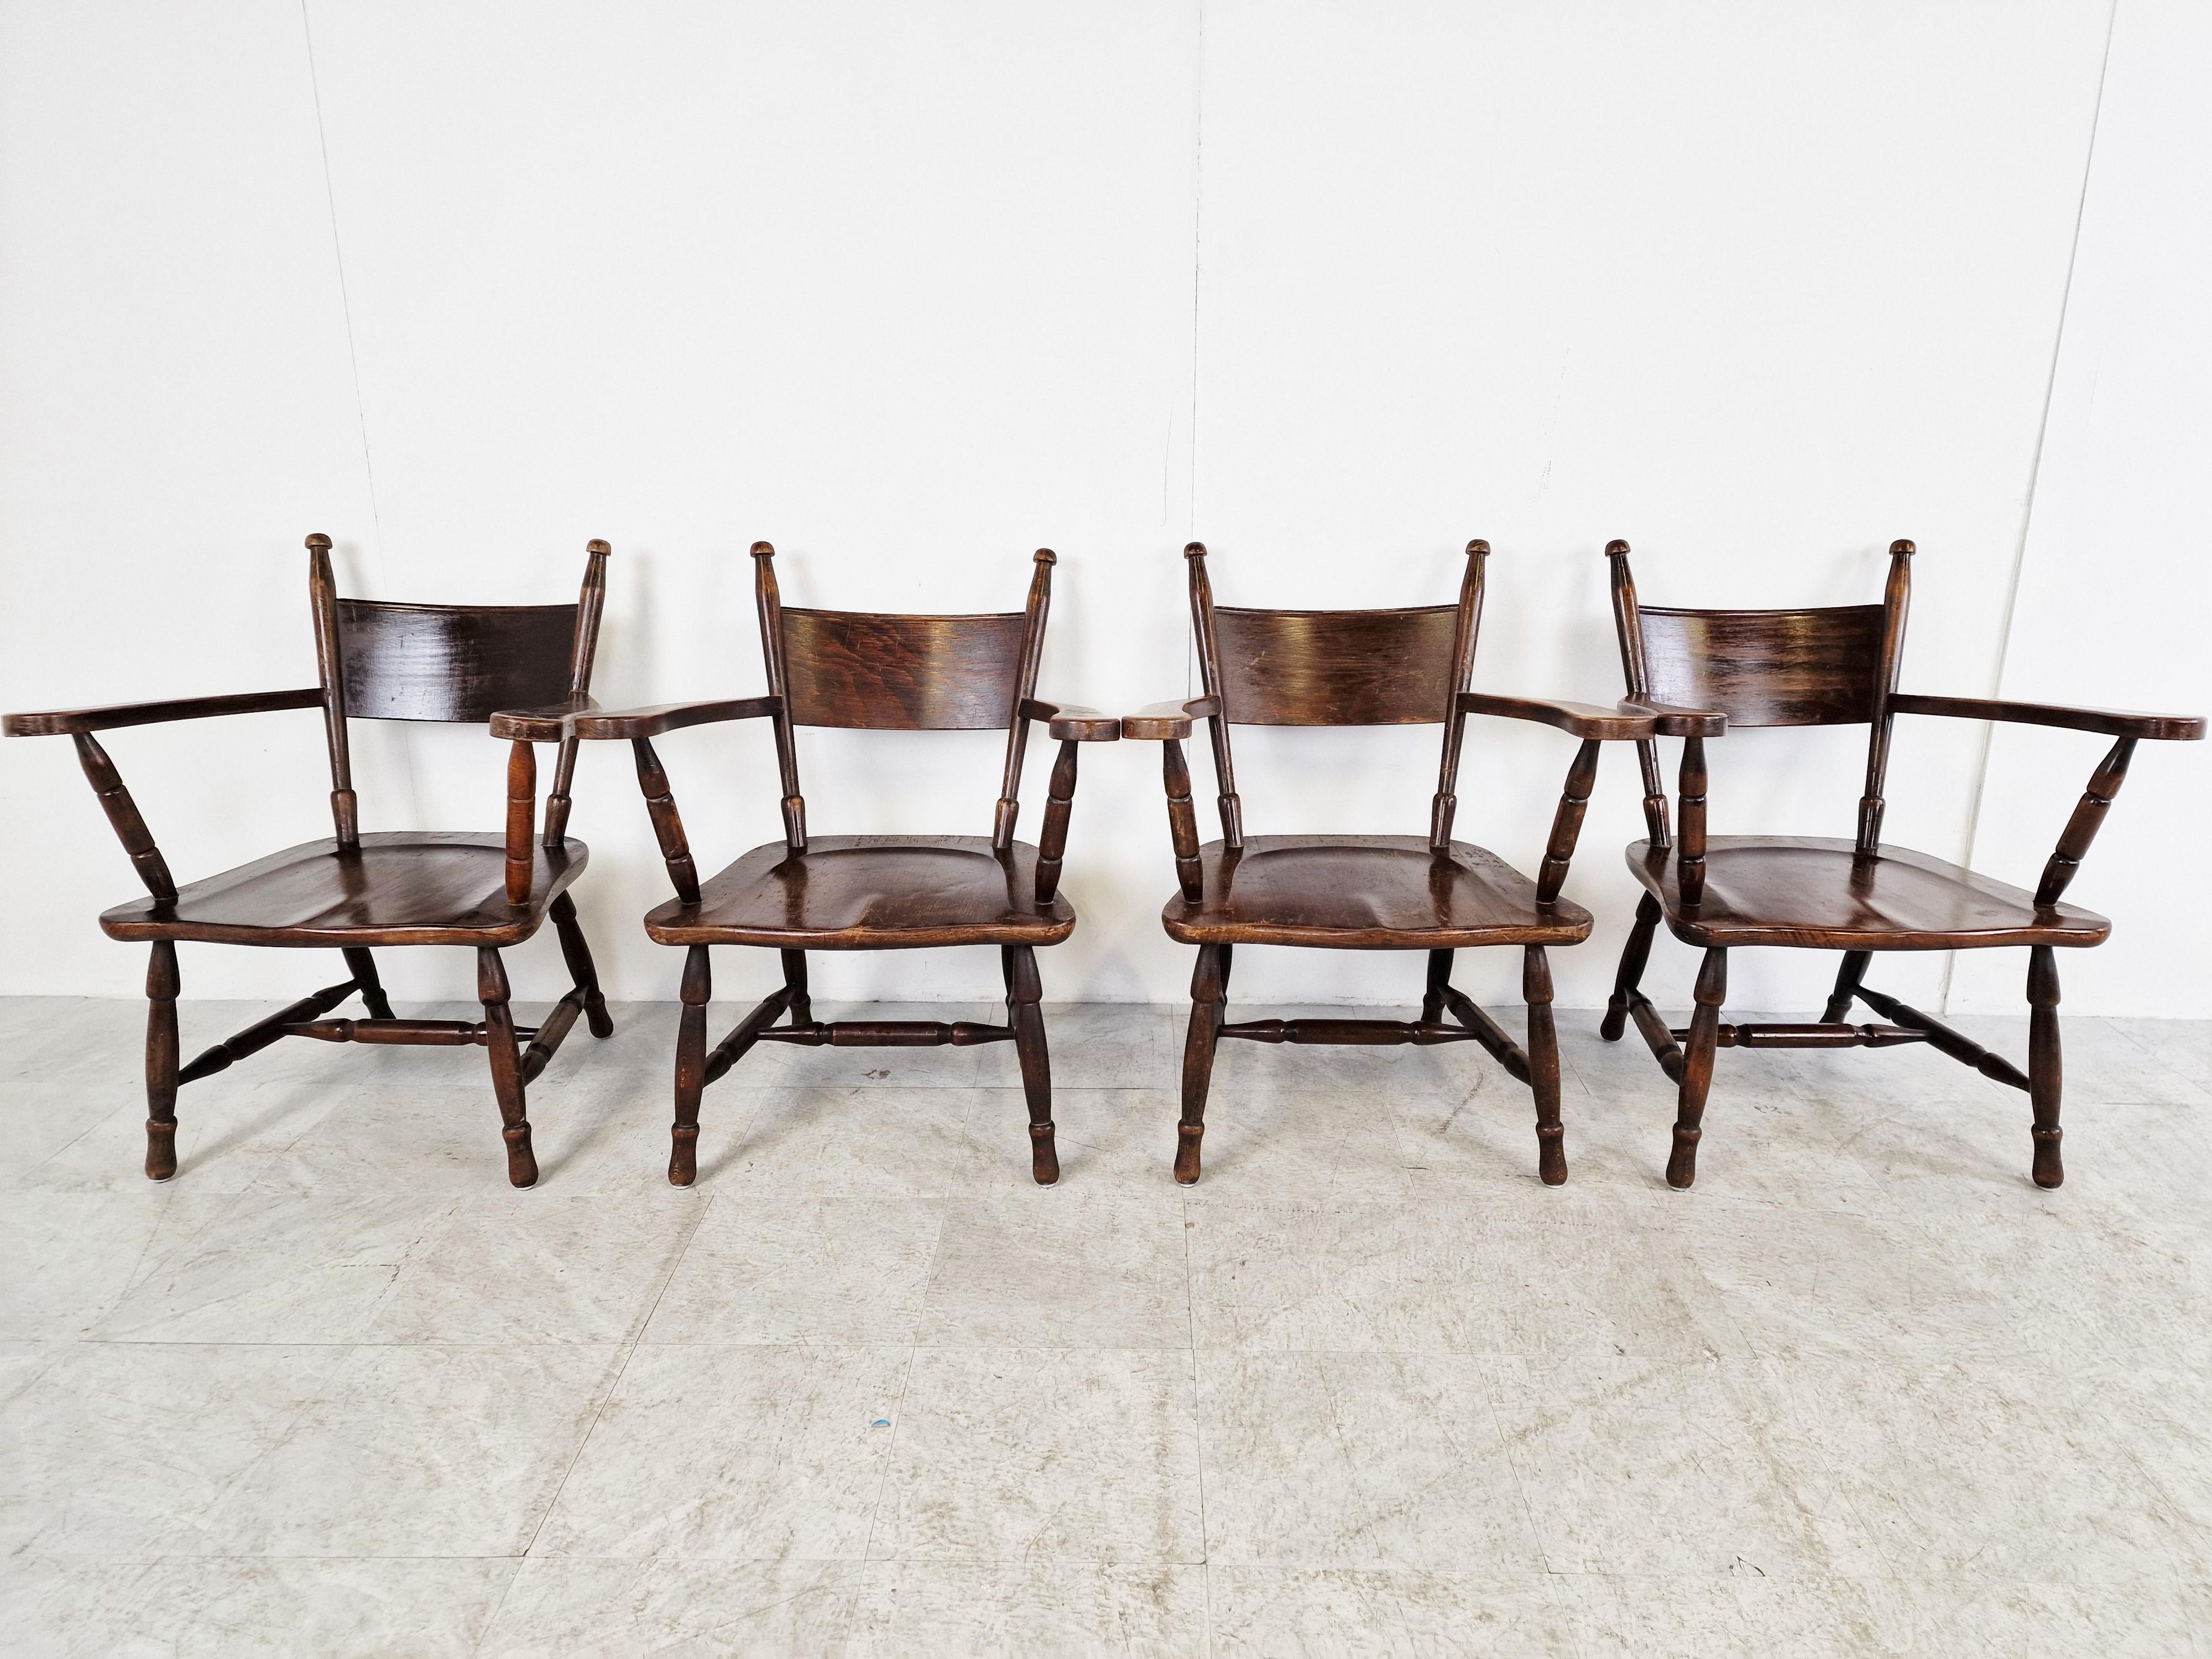 Fauteuils brutalistes robustes en chêne teinté.

Des chaises bien conçues, avec une assise joliment formée et des accoudoirs joliment incurvés.

Les cadres sont joliment sculptés.

Années 1960 - France

Bon état avec usure normale liée à